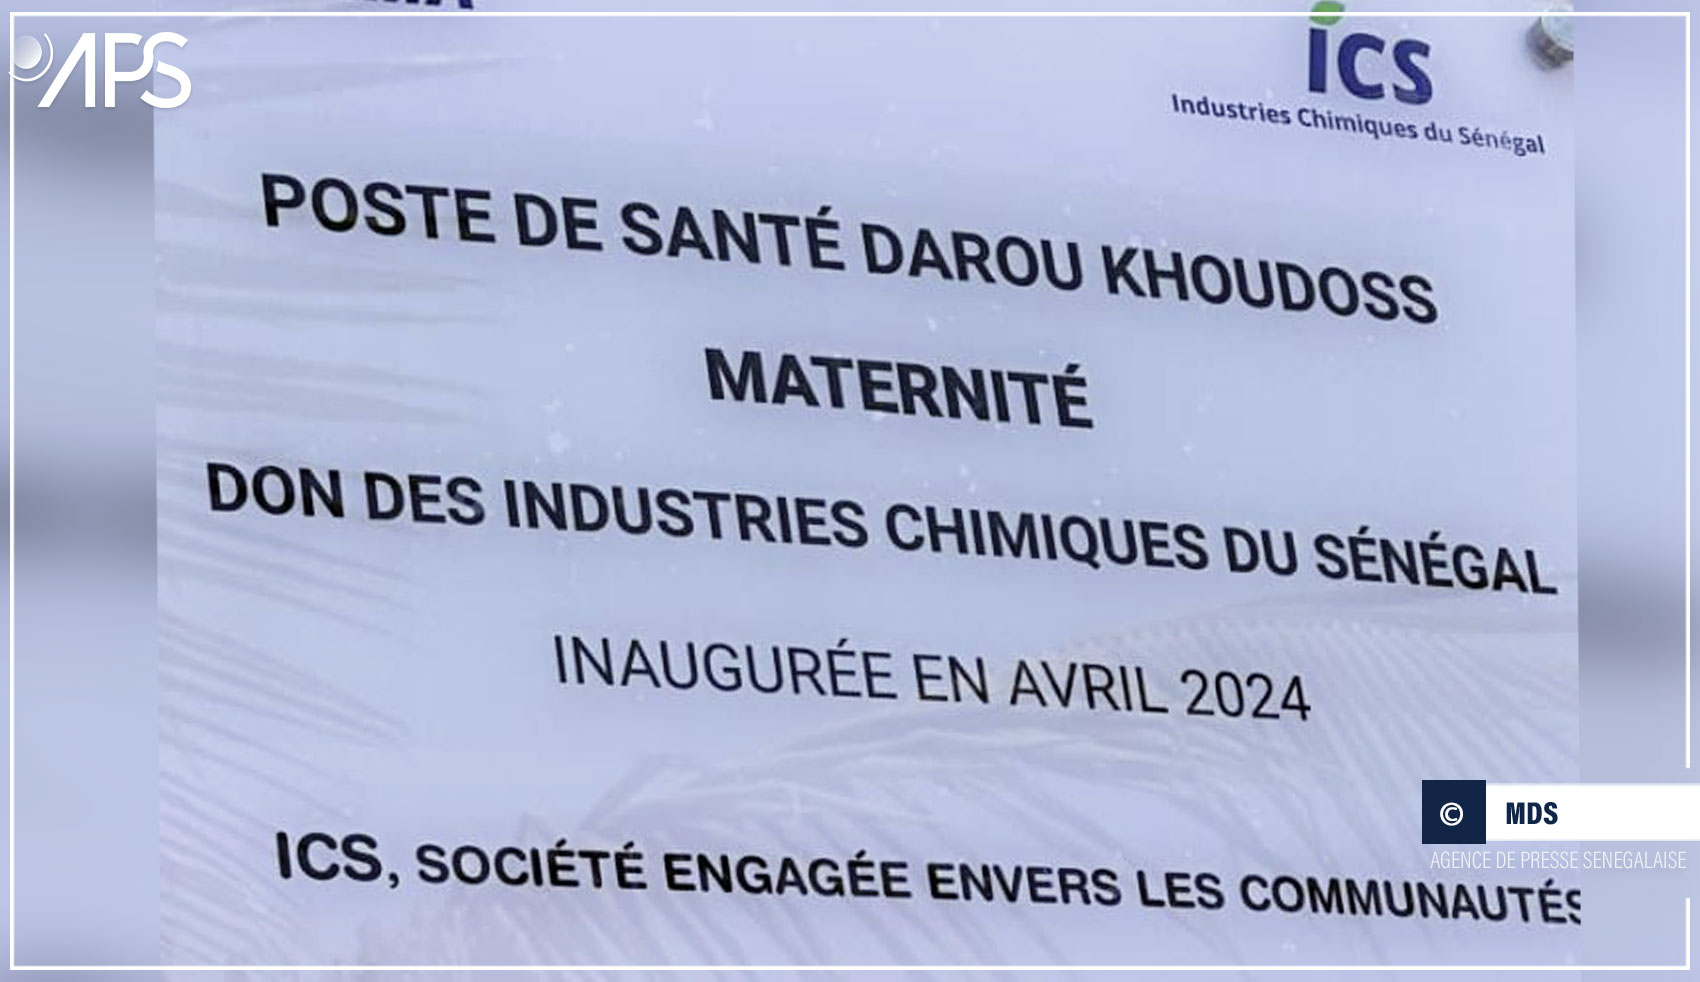 Les ICS inaugurent une nouvelle maternité à Darou Khoudoss